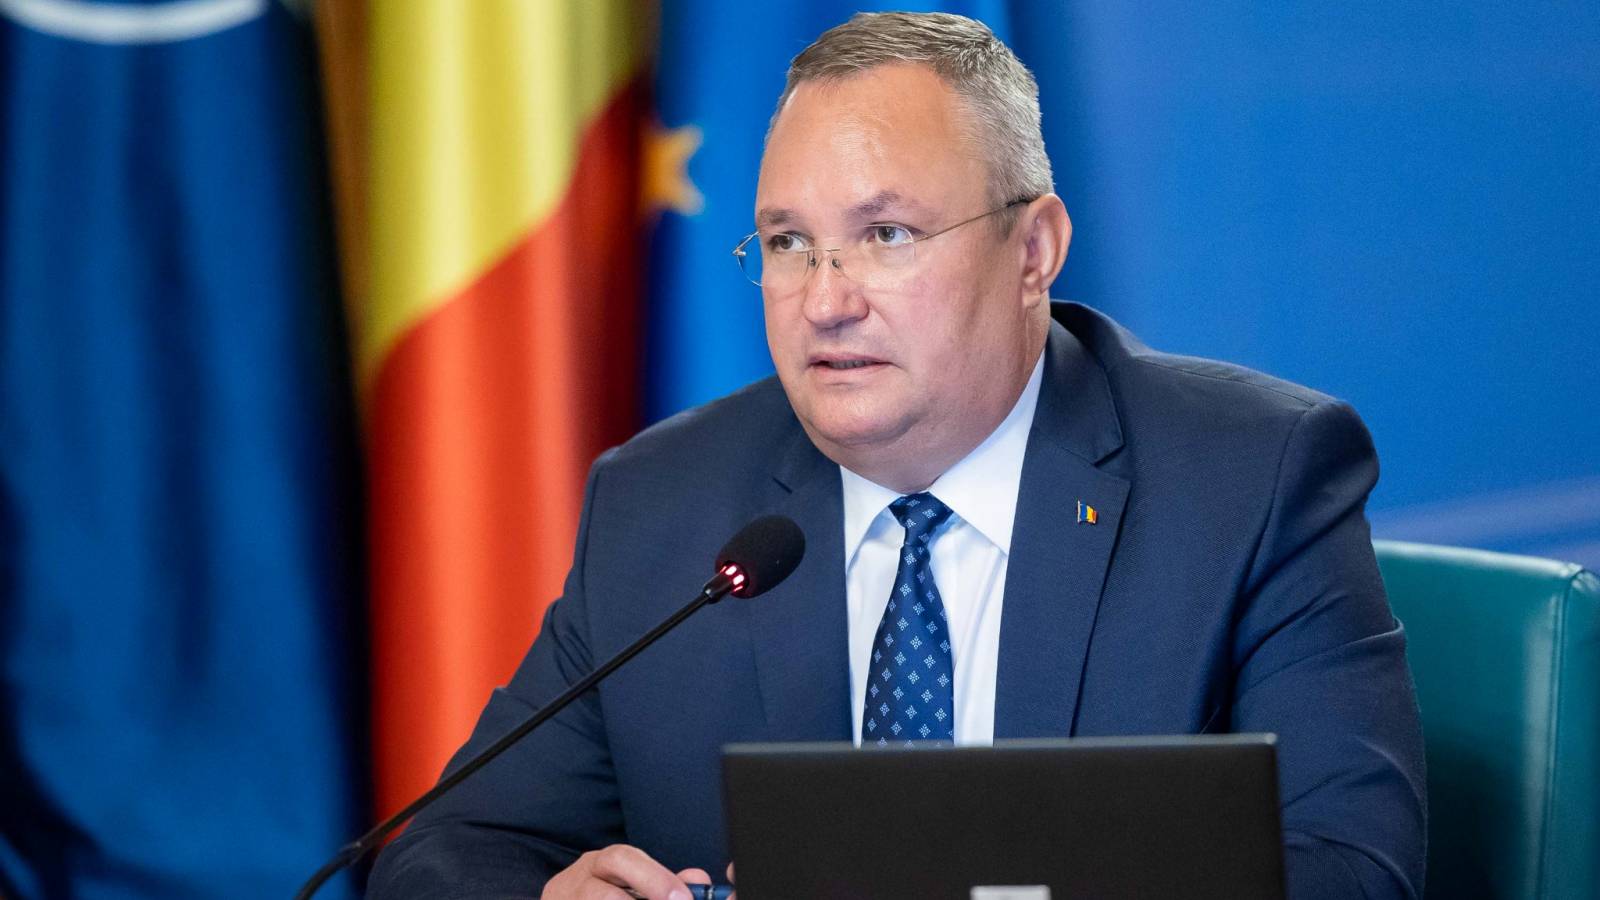 Nicolae Ciuca besprach die Ausweitung der strategischen Partnerschaft mit dem Premierminister der Republik Moldau